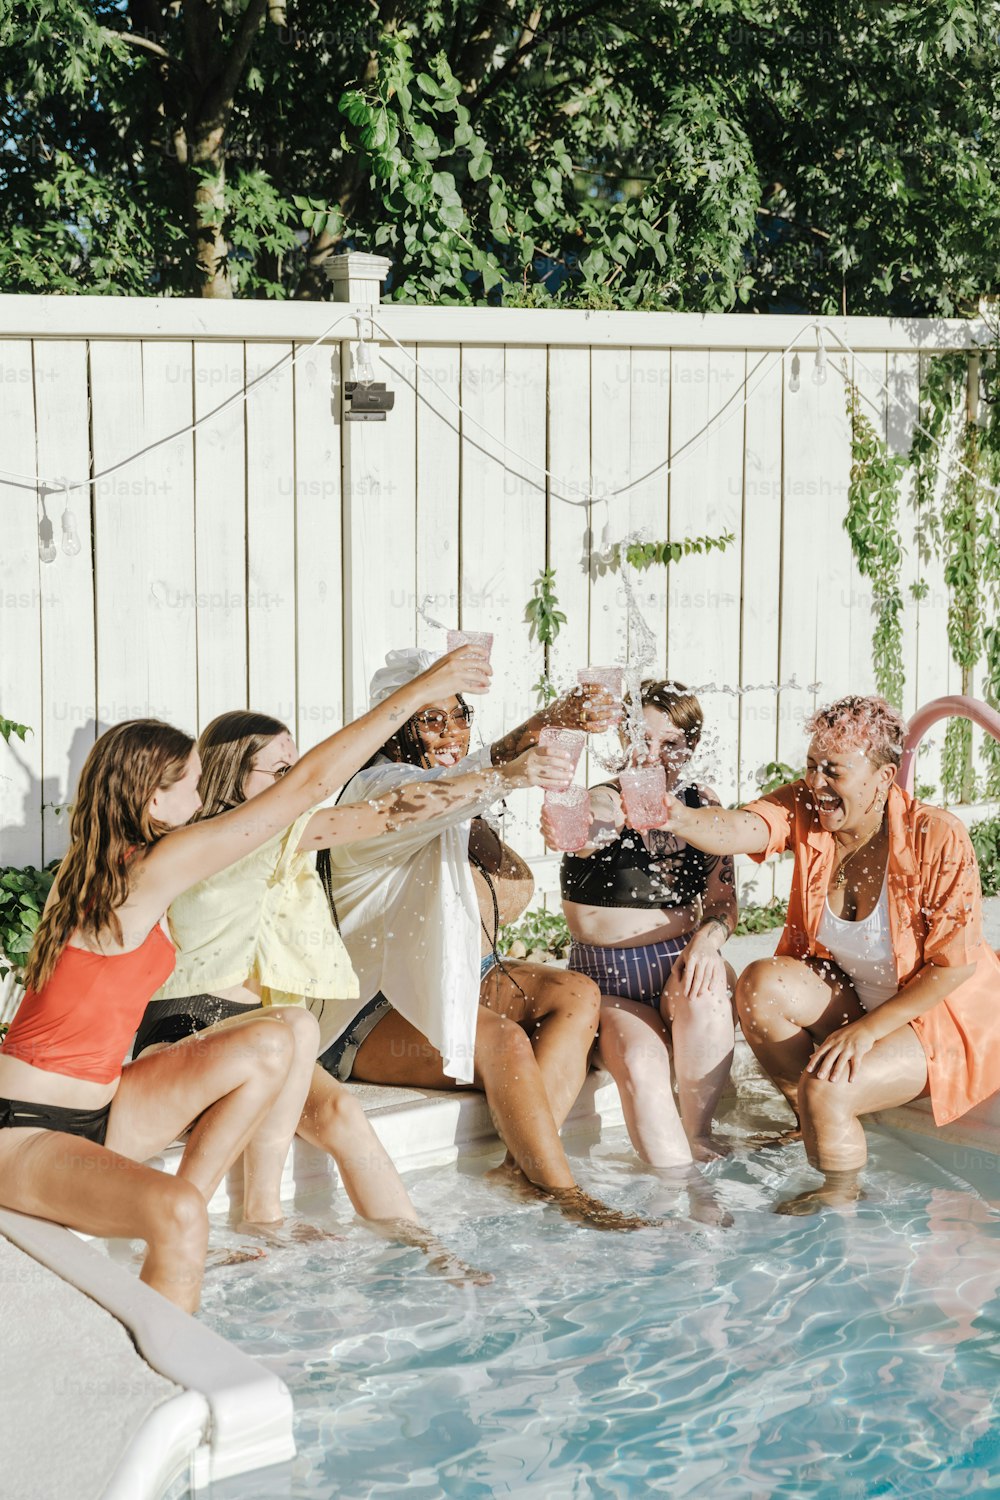 Un groupe de personnes assises autour d’une piscine buvant du champagne